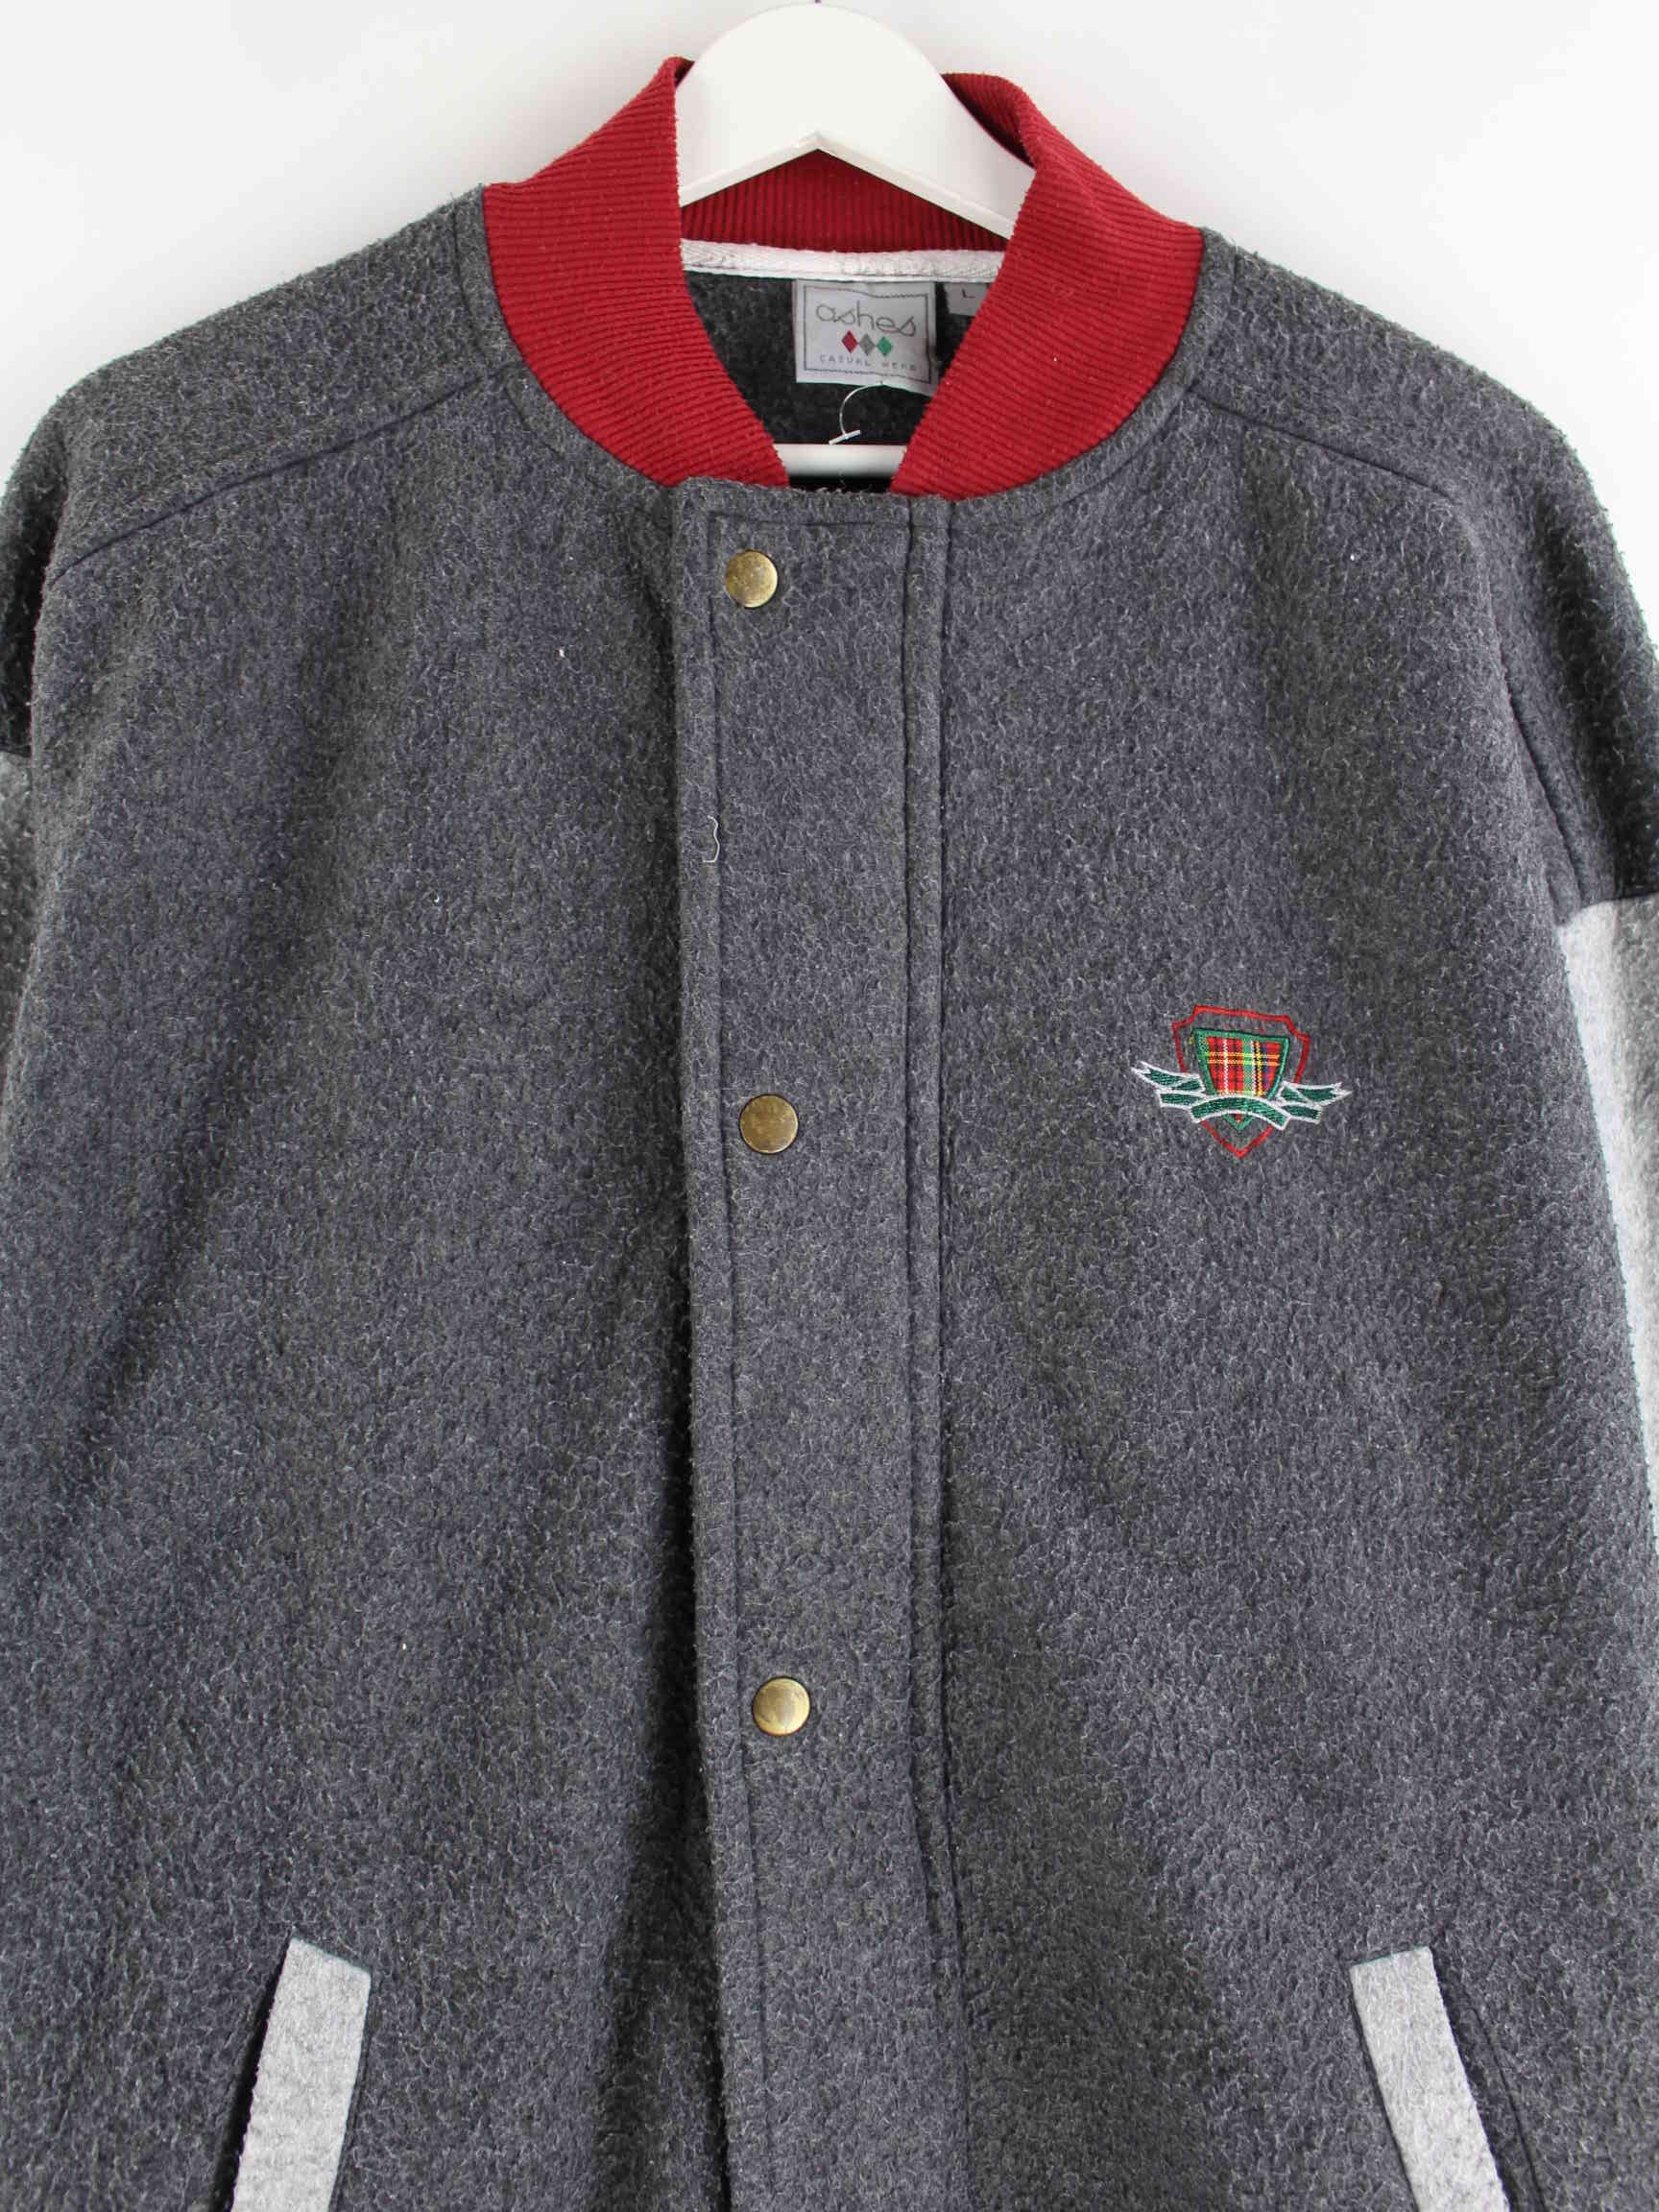 Vintage 90s Fleece Sweatjacke Grau L (detail image 1)